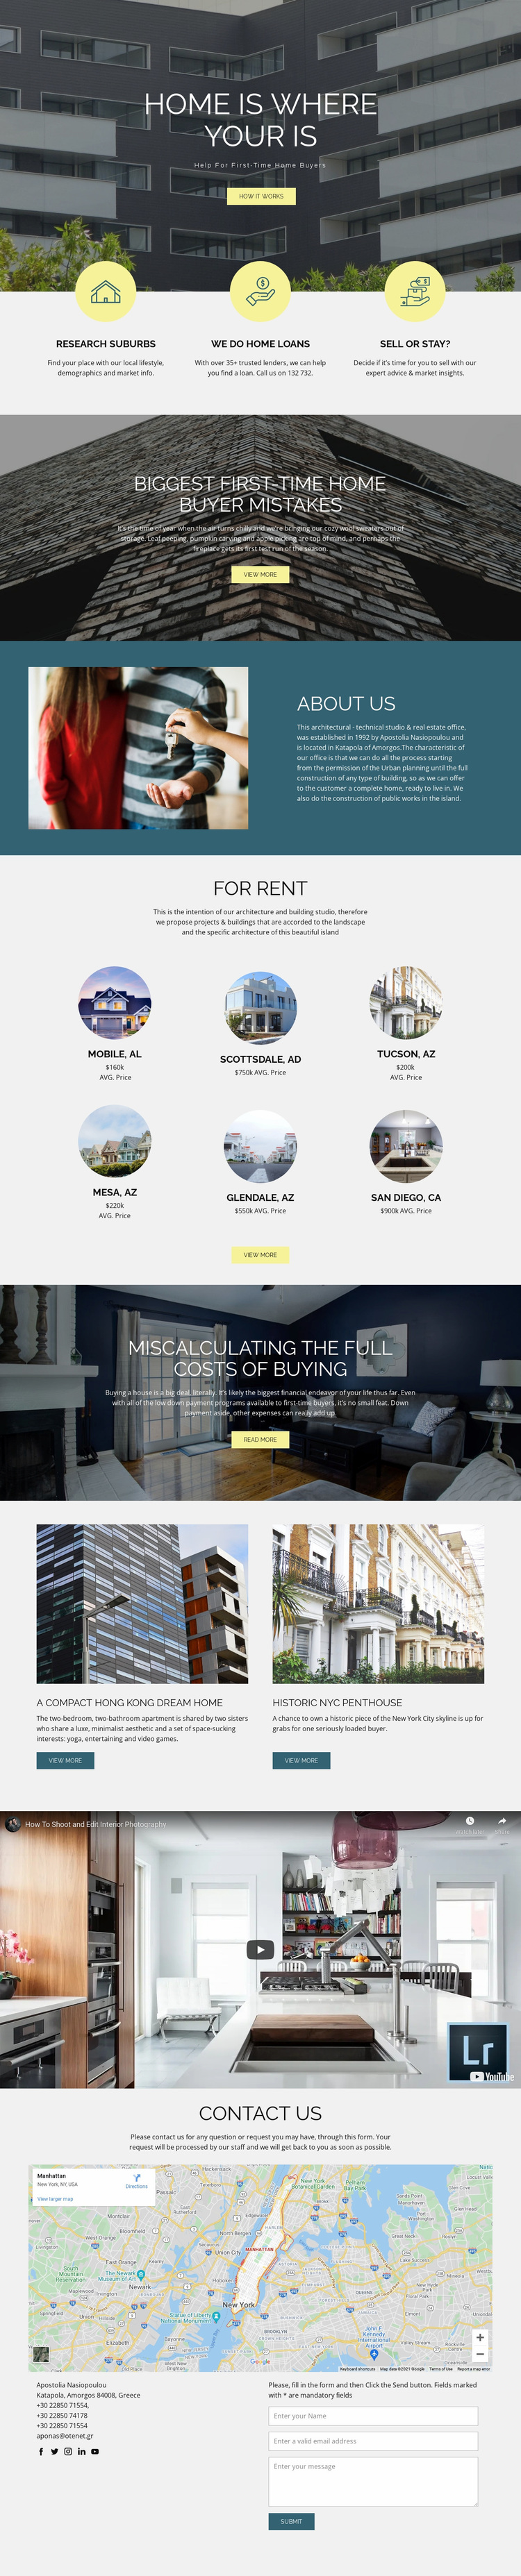 Home real estate Website Design